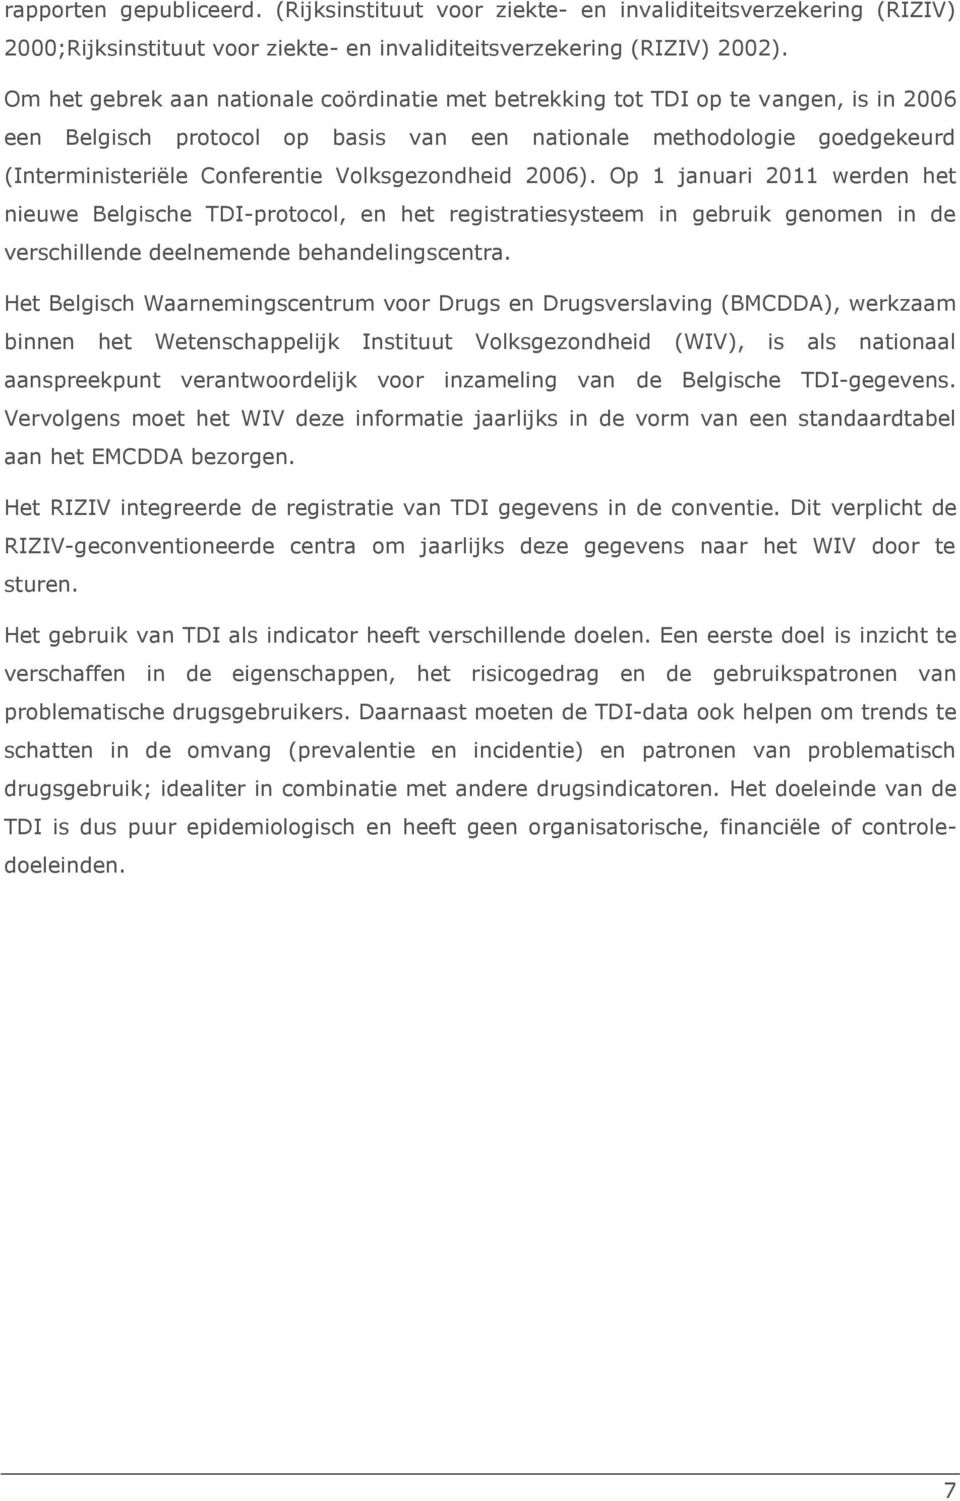 Volksgezondheid 2006). Op 1 januari 2011 werden het nieuwe Belgische TDI-protocol, en het registratiesysteem in gebruik genomen in de verschillende deelnemende behandelingscentra.